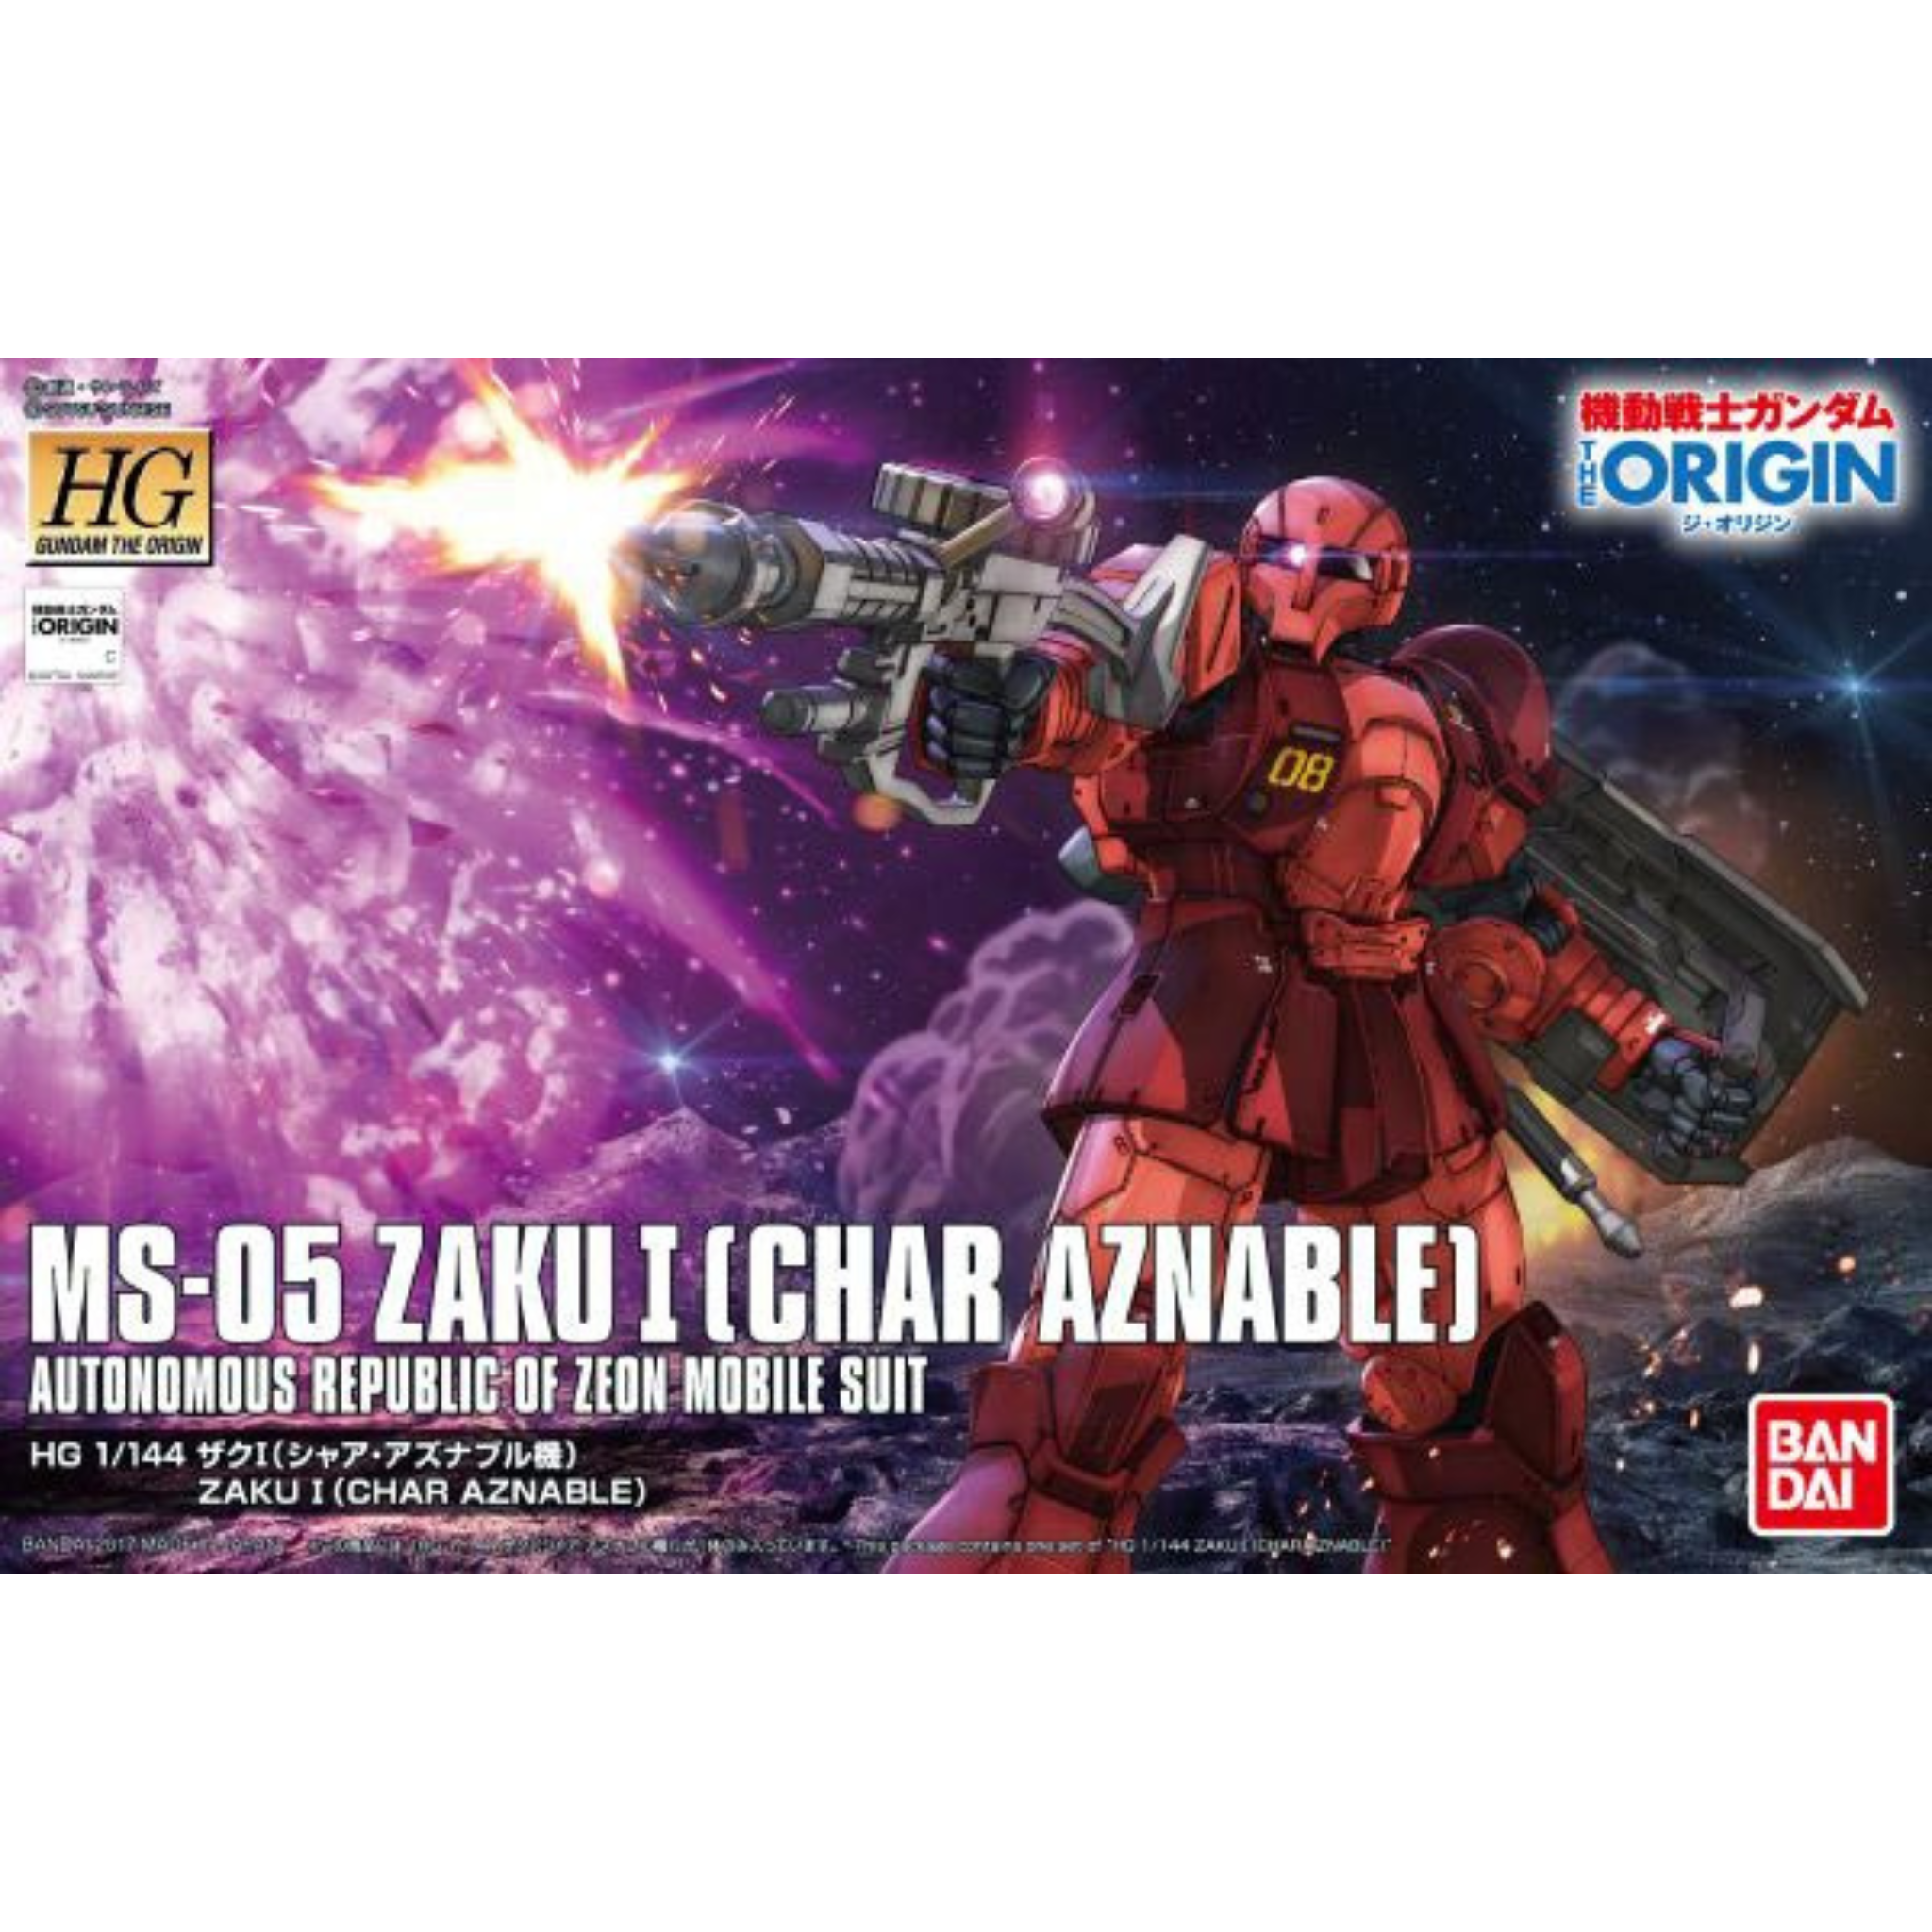 HG 1/144 The Origin #15 MS-05 Zaku I (Char Aznable - Battle of Mare Smythii) #5057737 by Bandai